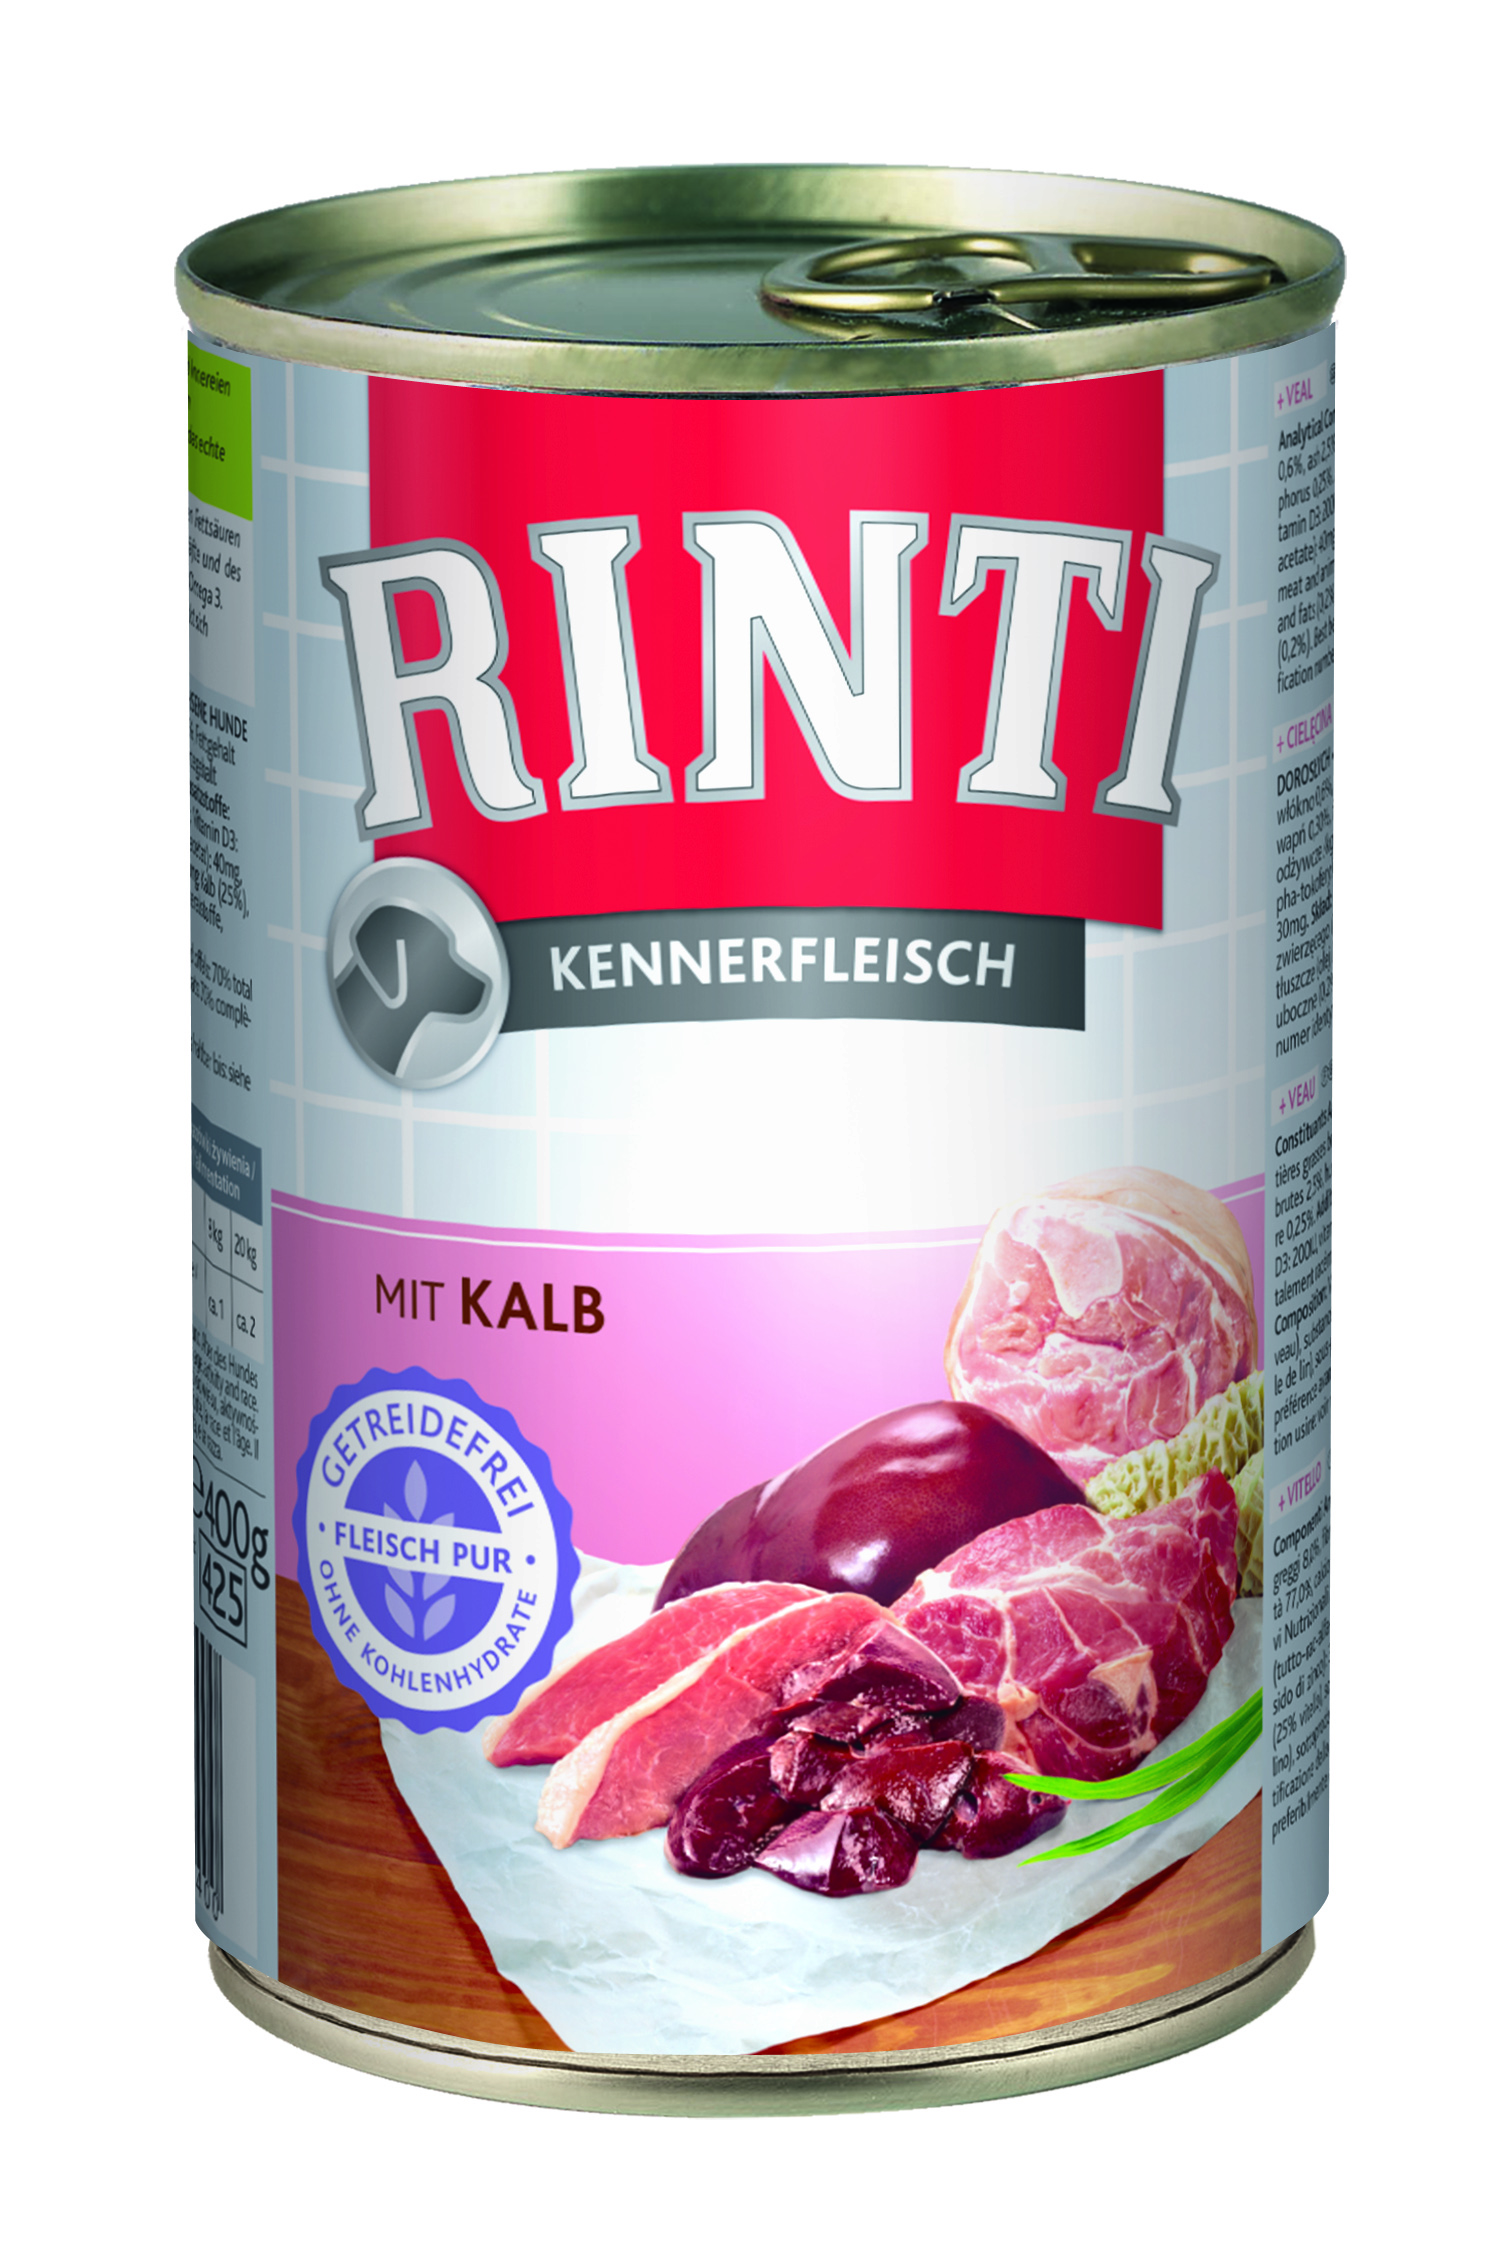 Rinti Kennerfleisch - mit Kalb